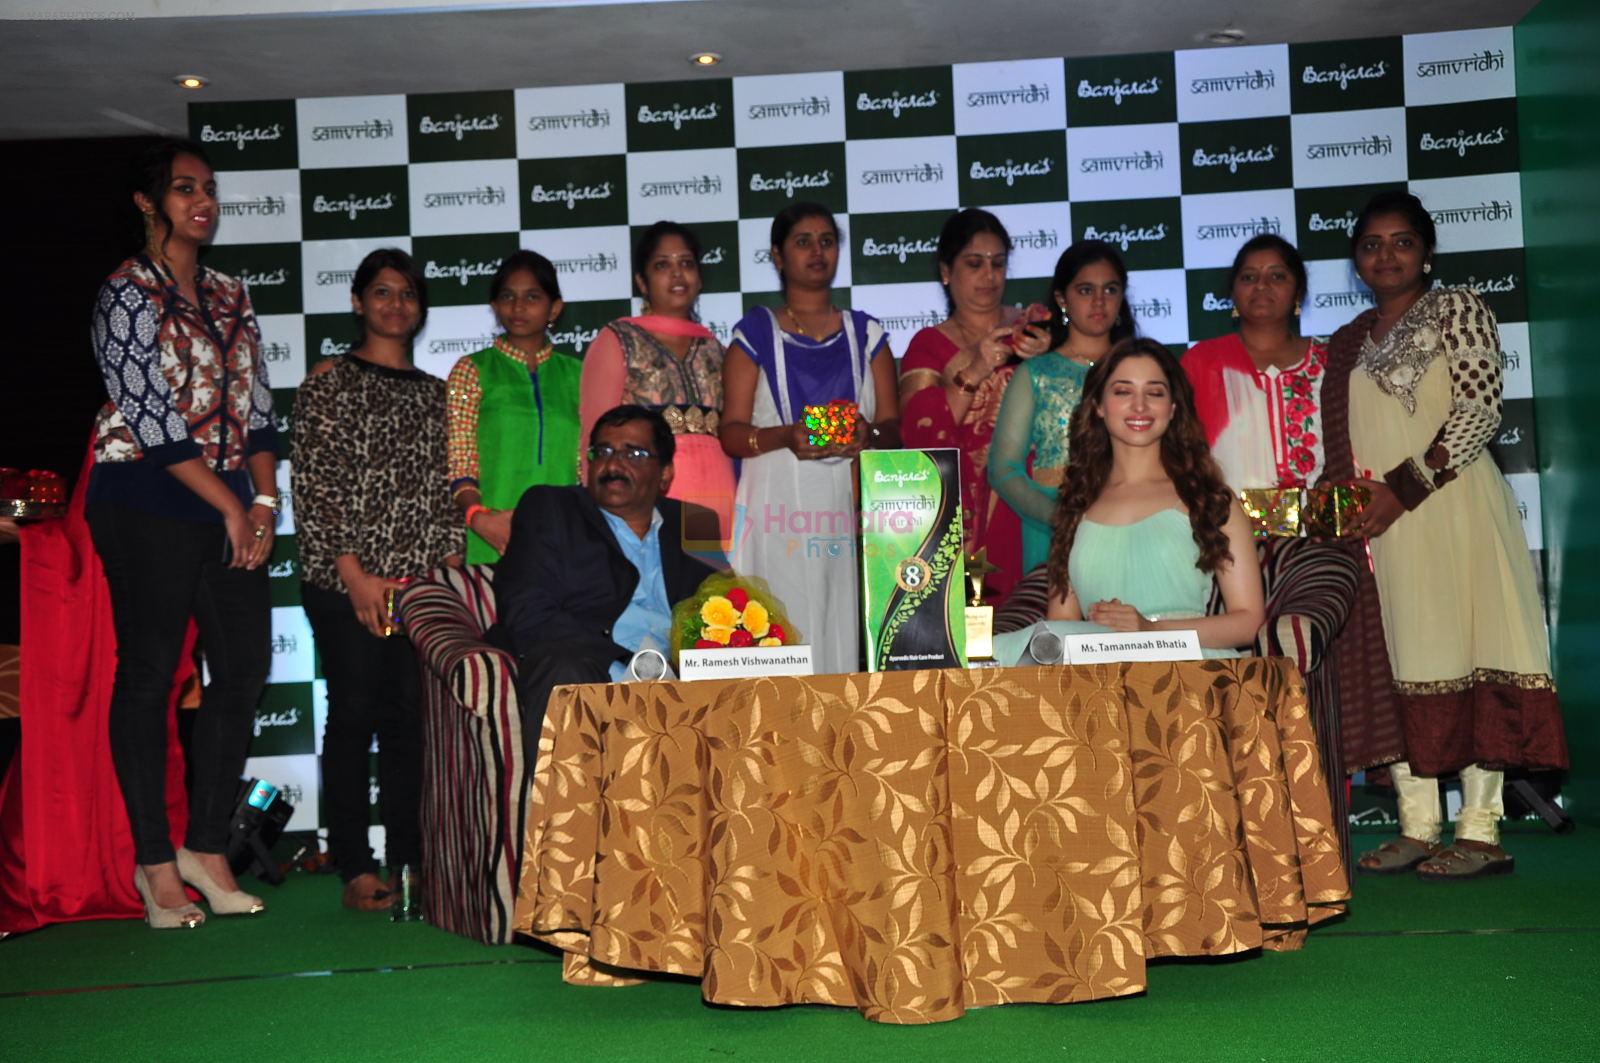 Tamannaah Bhatia Launches Banjara's Samvridhi Hair Oil on 22nd Aug 2015